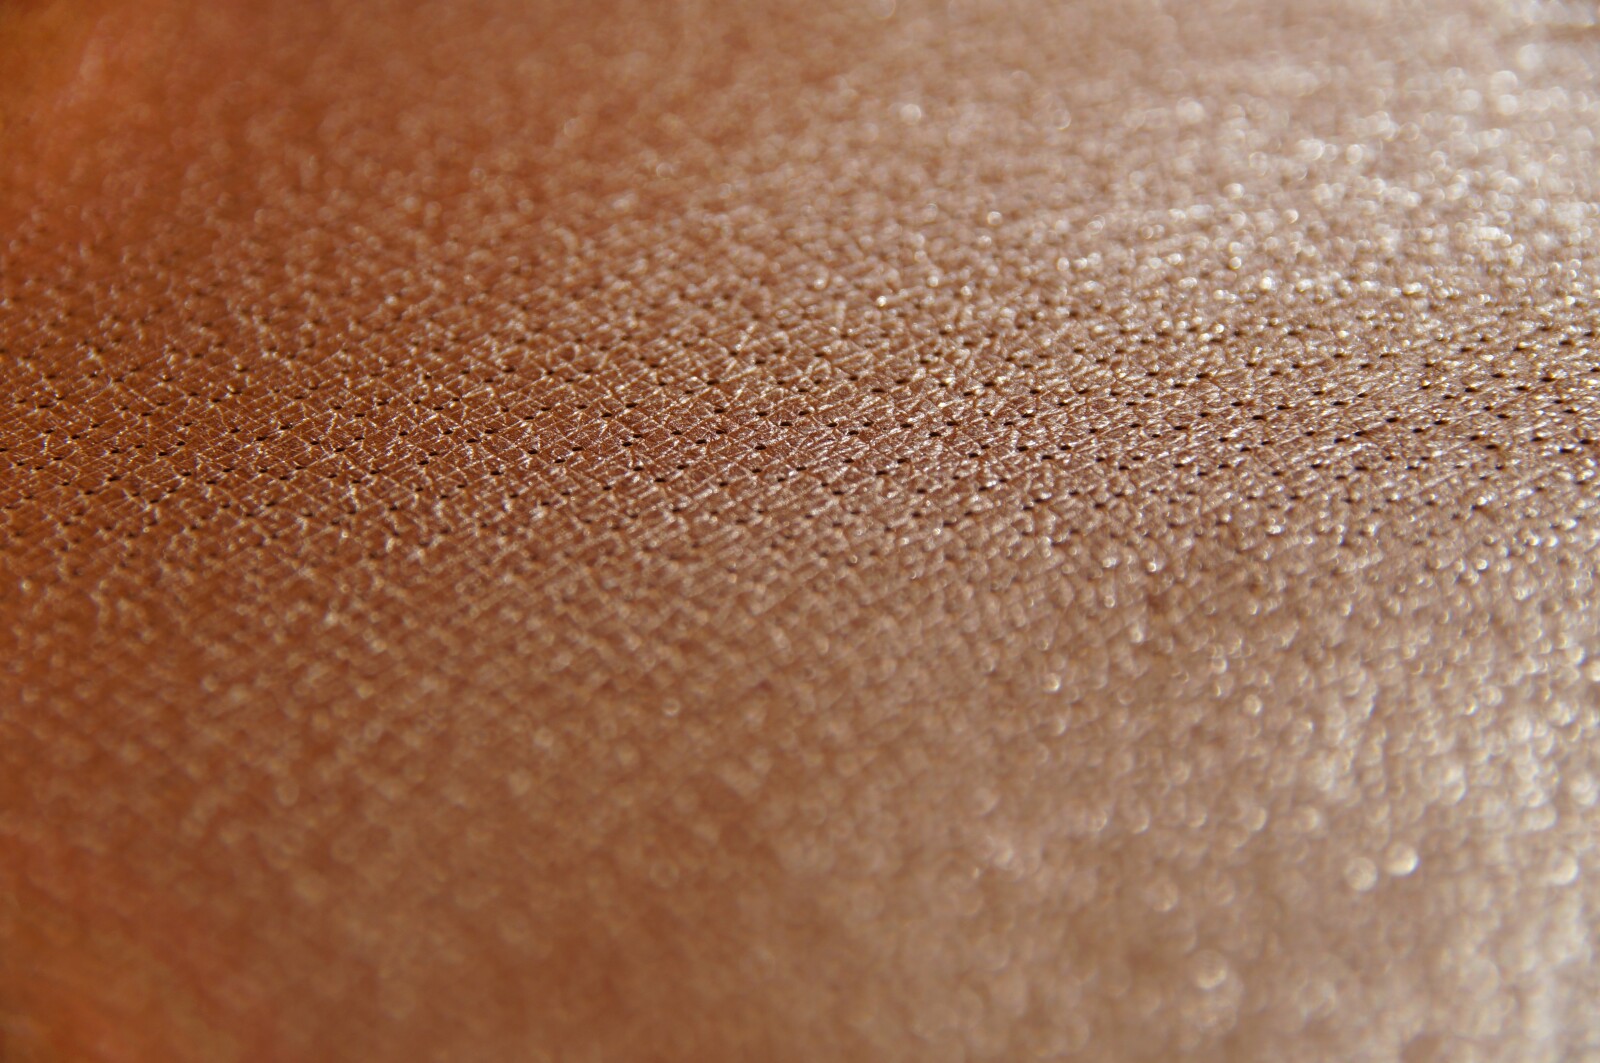 a close up of skin pores